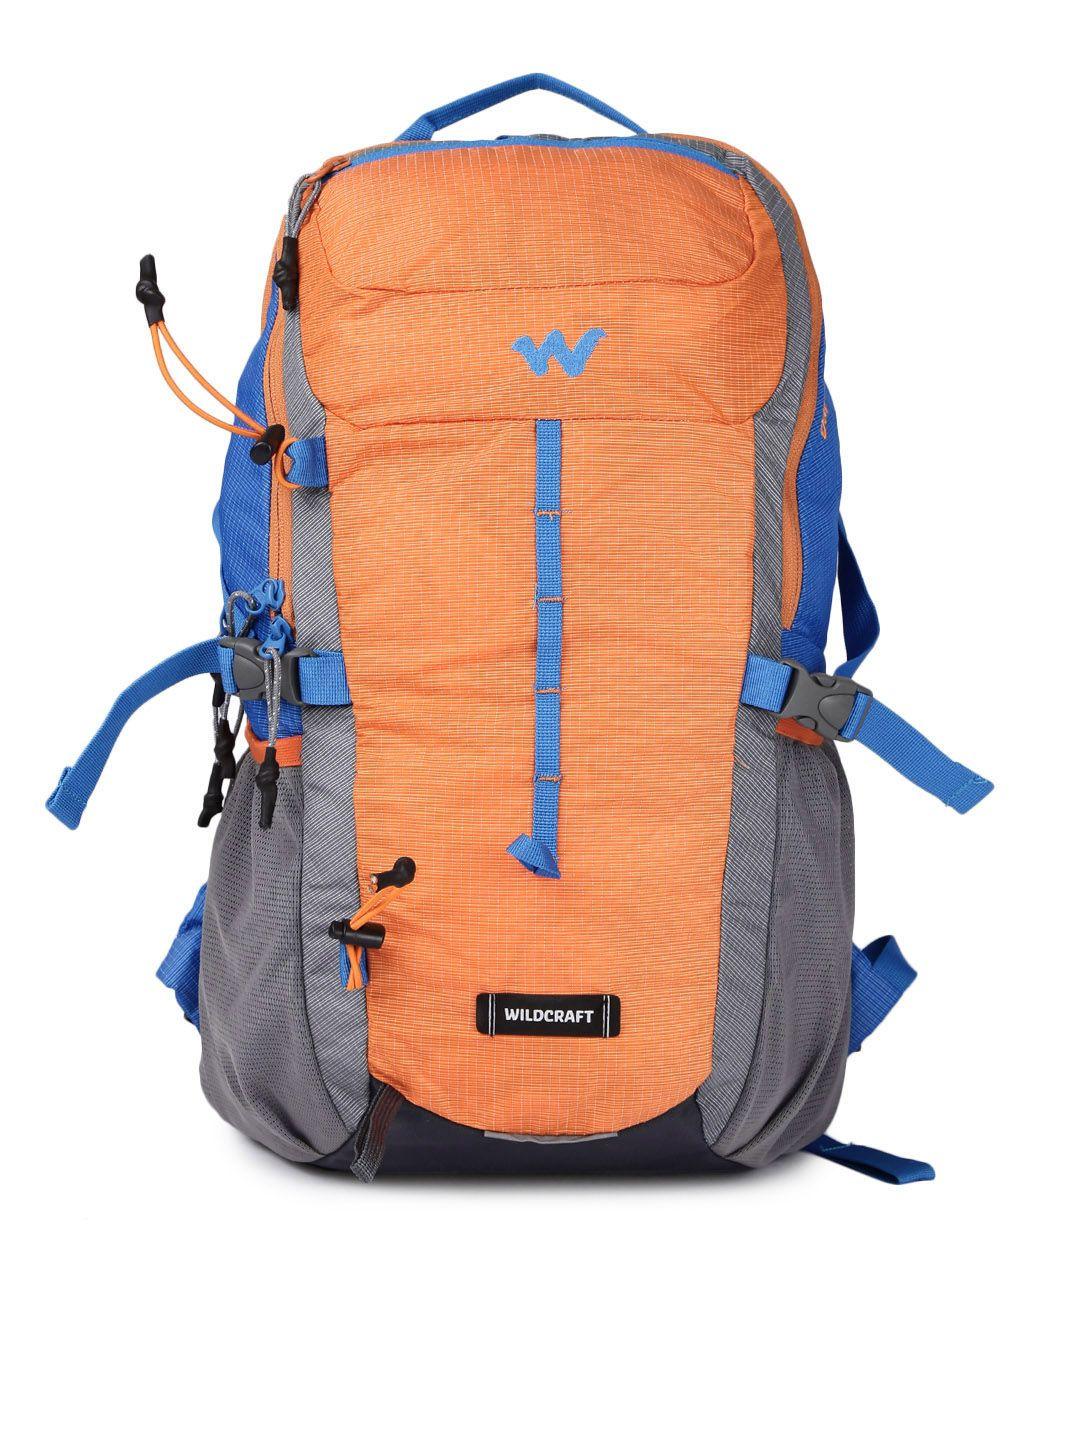 wildcraft unisex orange & blue printed daypack 25 rucksack